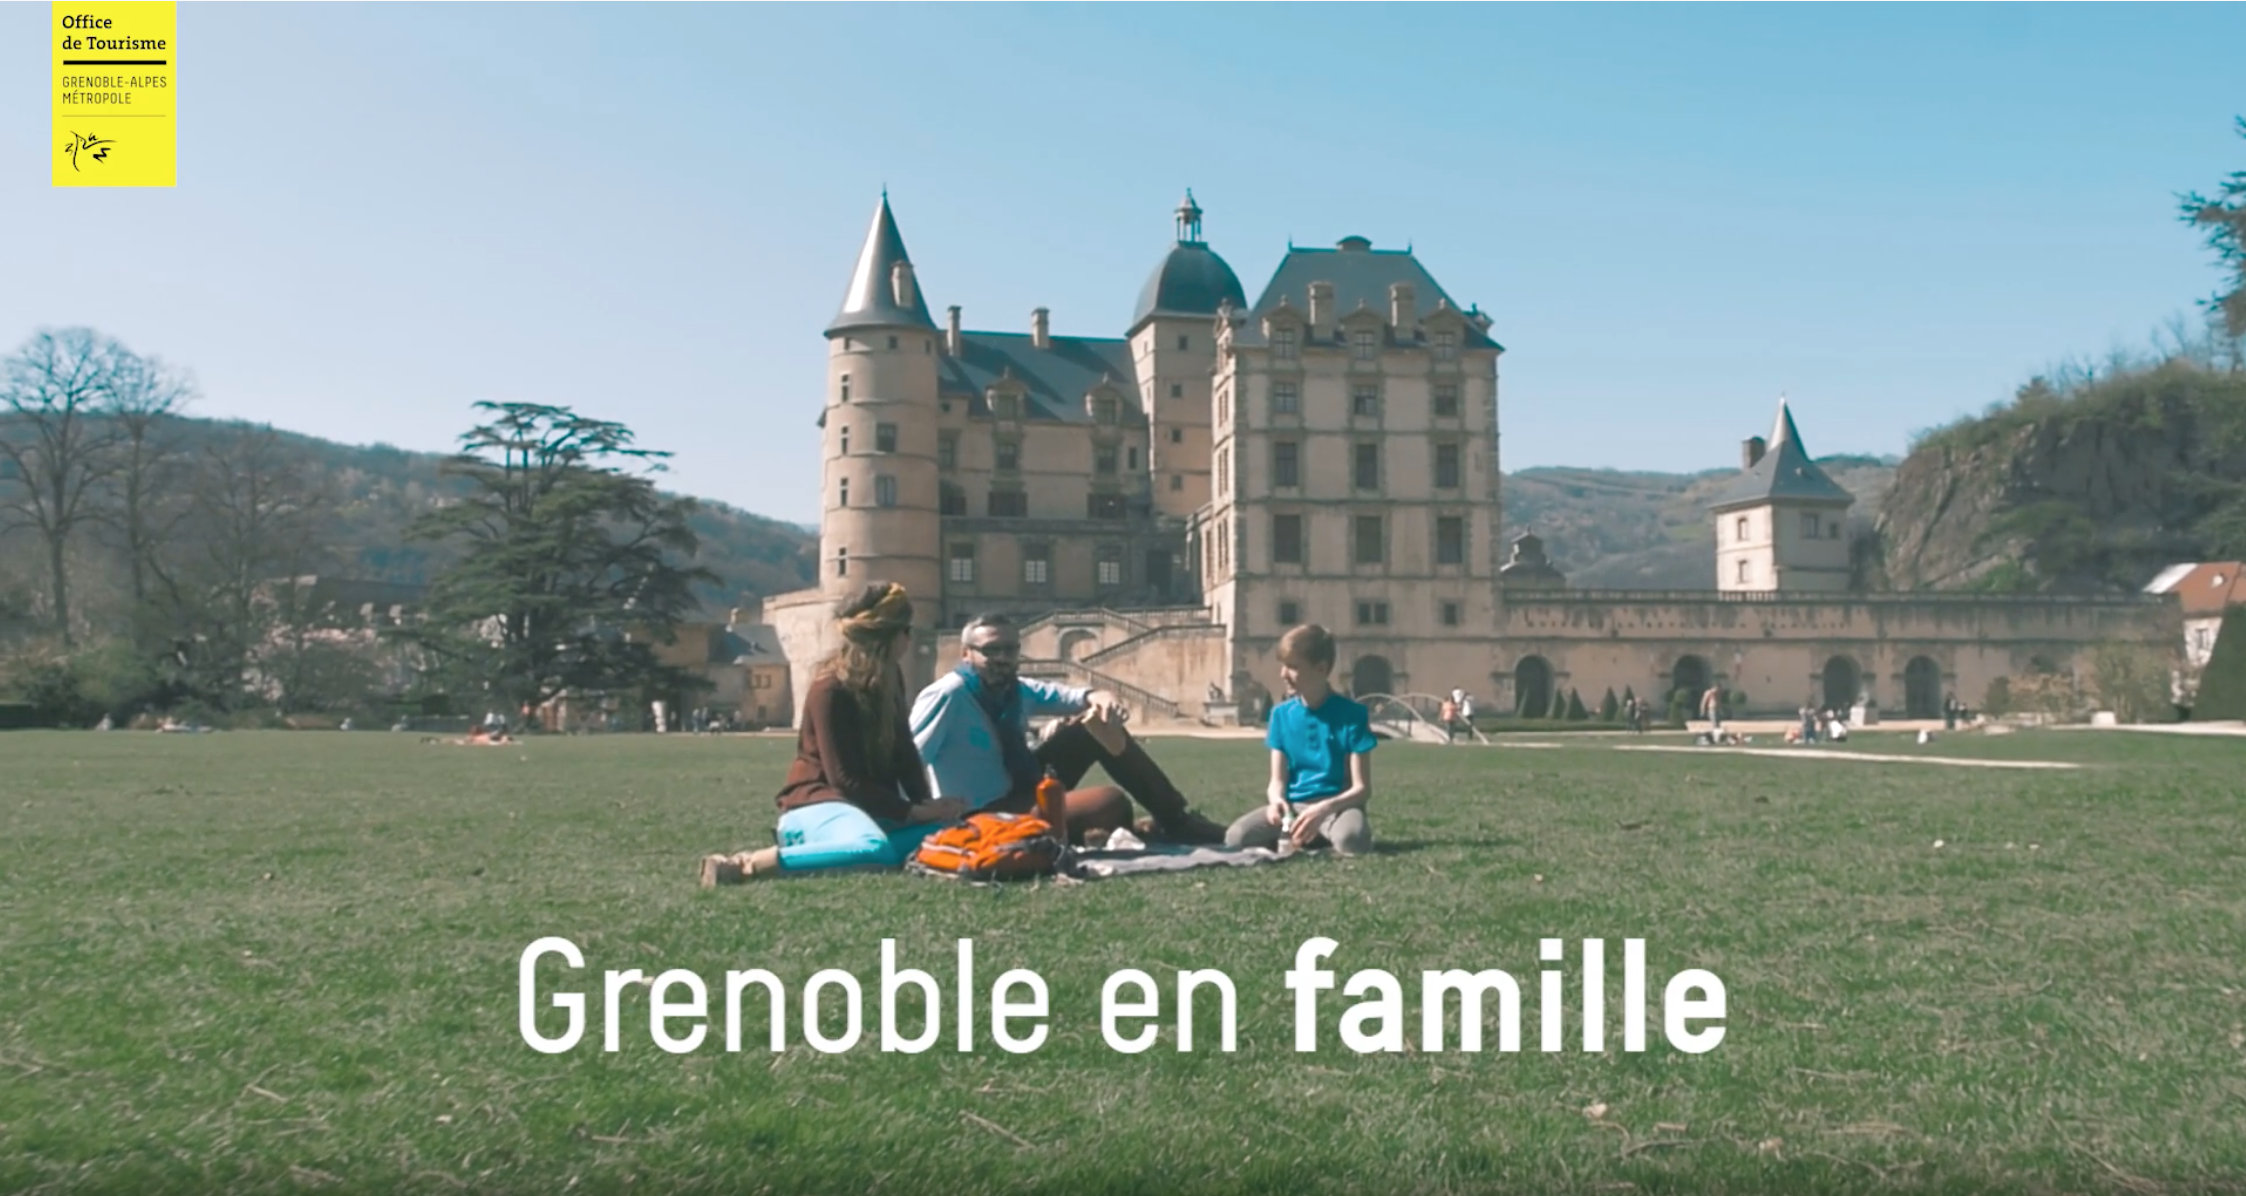 Grenoble en famille, film de Communication